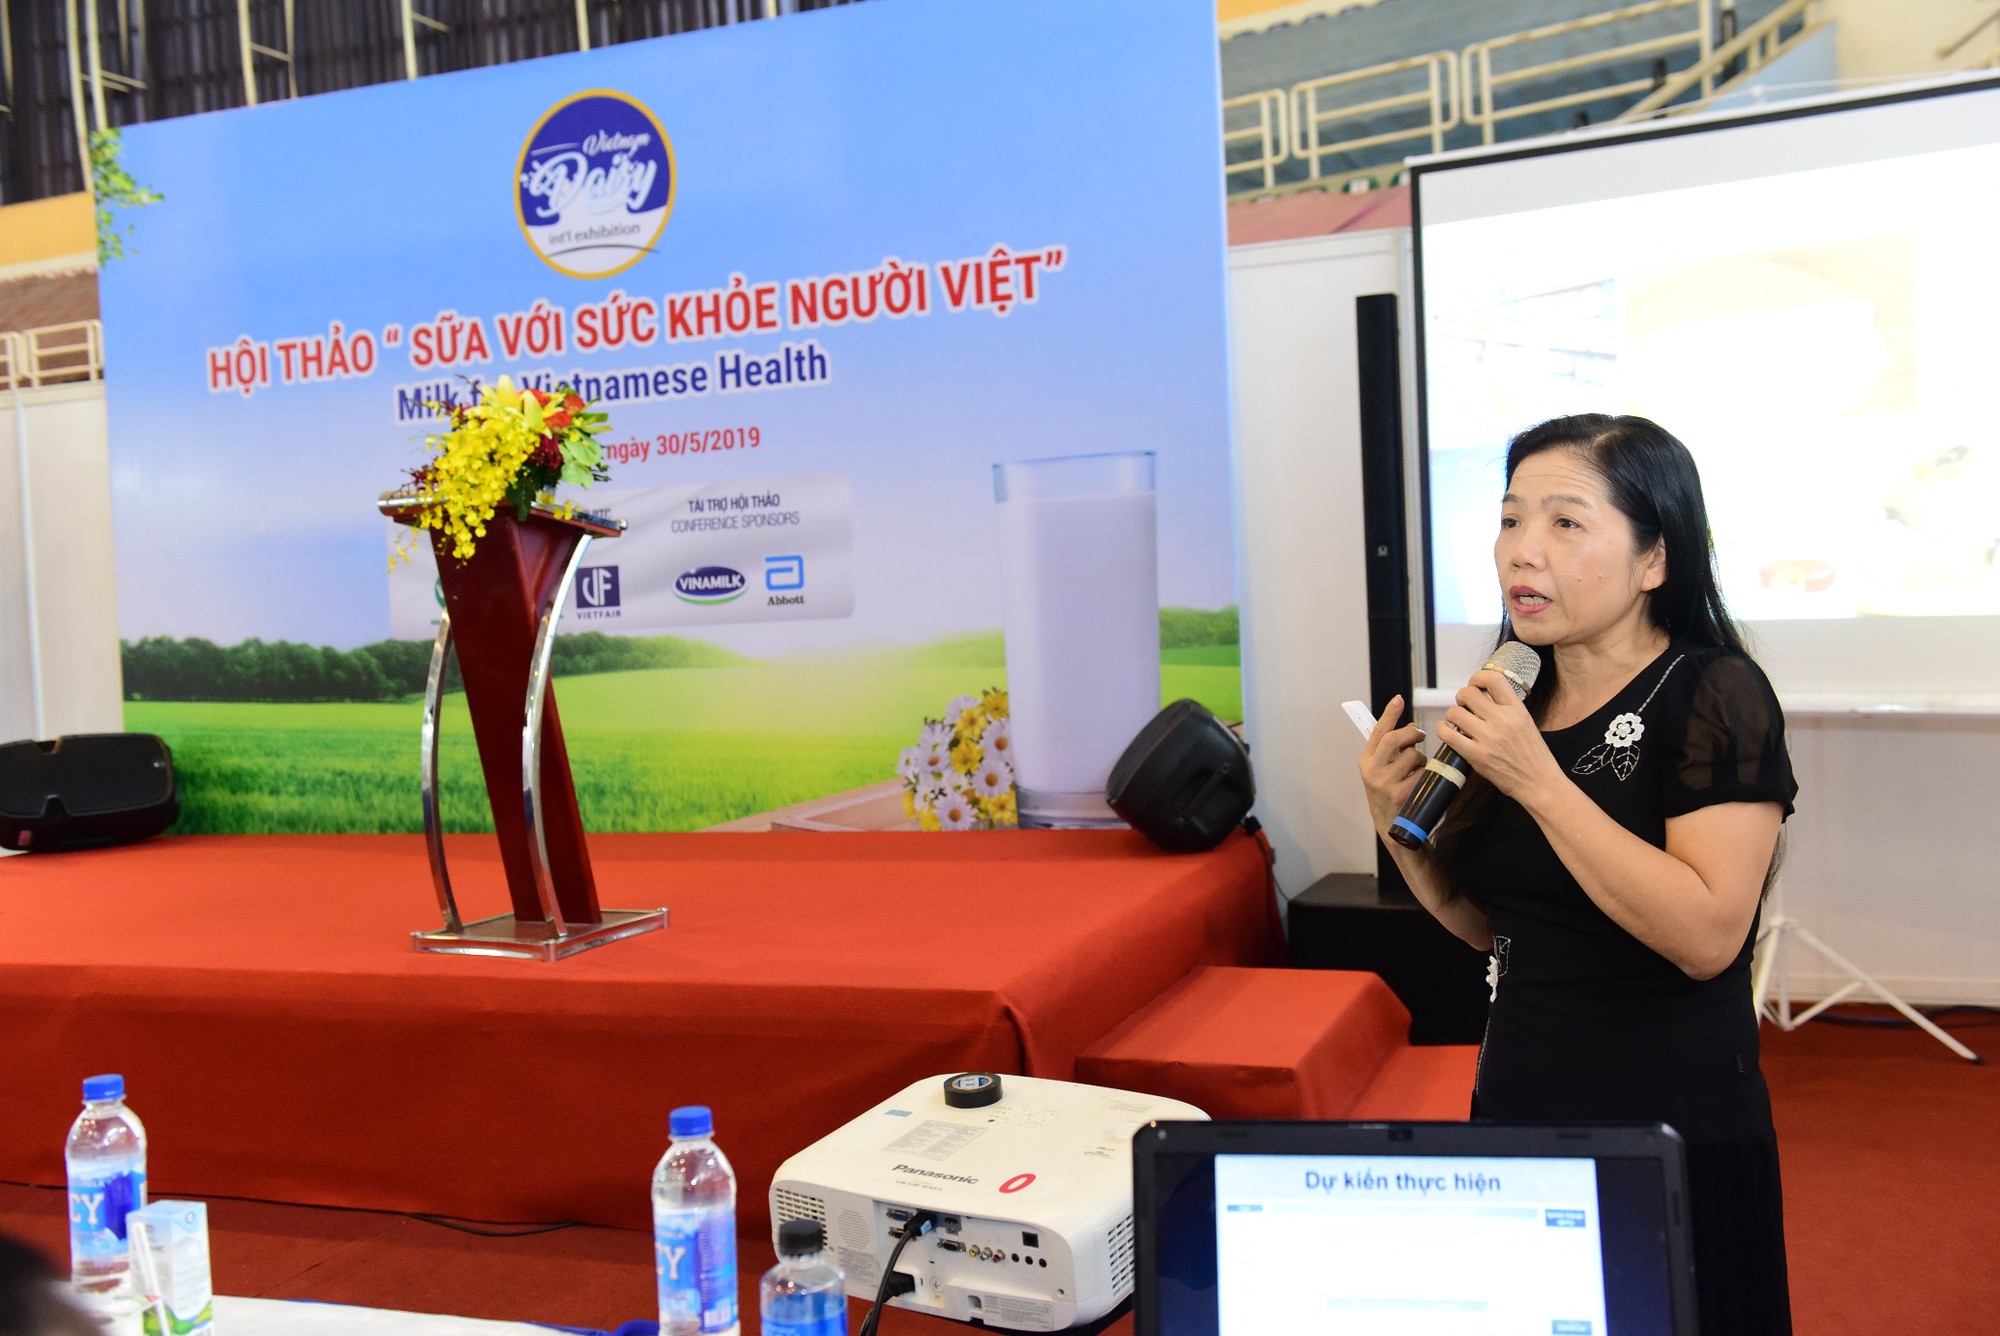 Hội thảo Sữa với sức khỏe người Việt - Đi tìm lời giải cho thực trạng thiếu hụt vi chất ở trẻ - Ảnh 1.